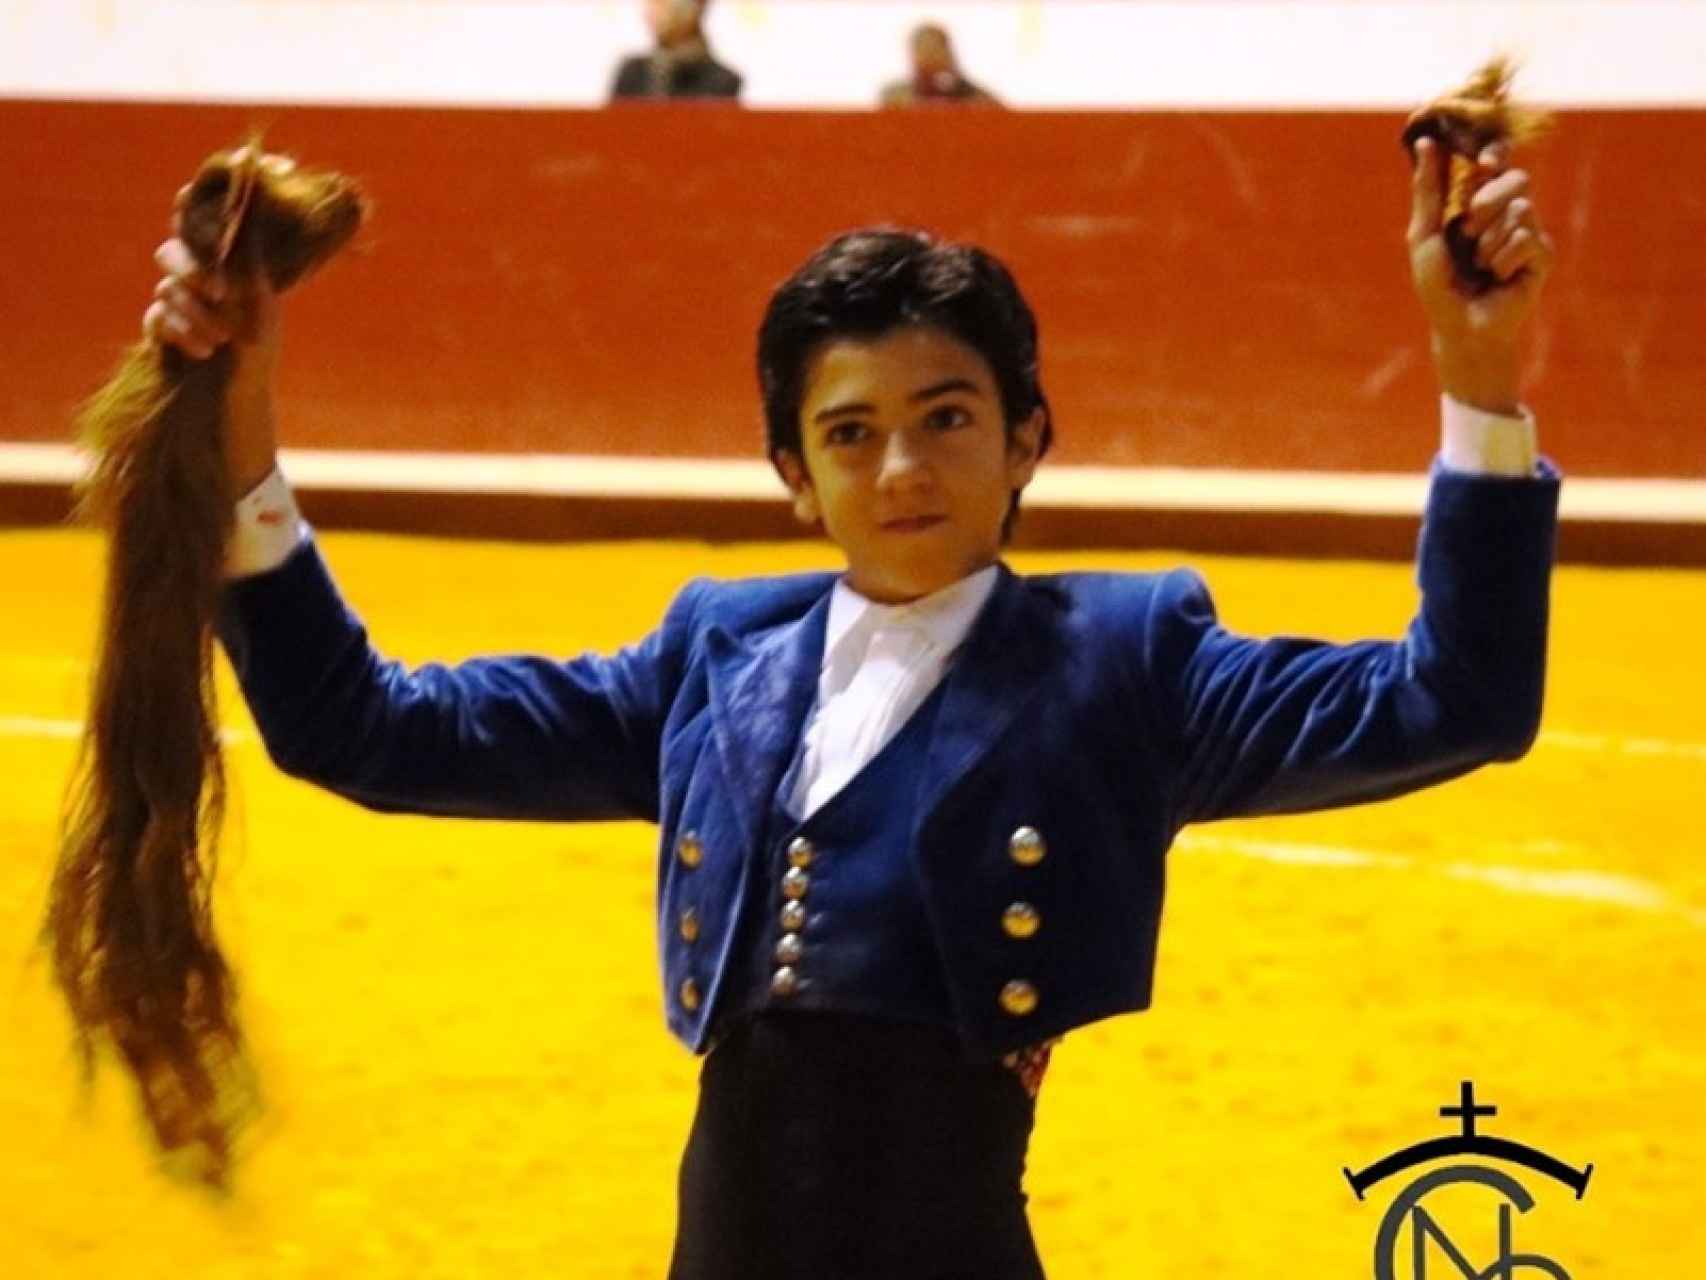 El jovencísimo novillero Marco Pérez fue el triunfador del festejo (Evelyn Martín)